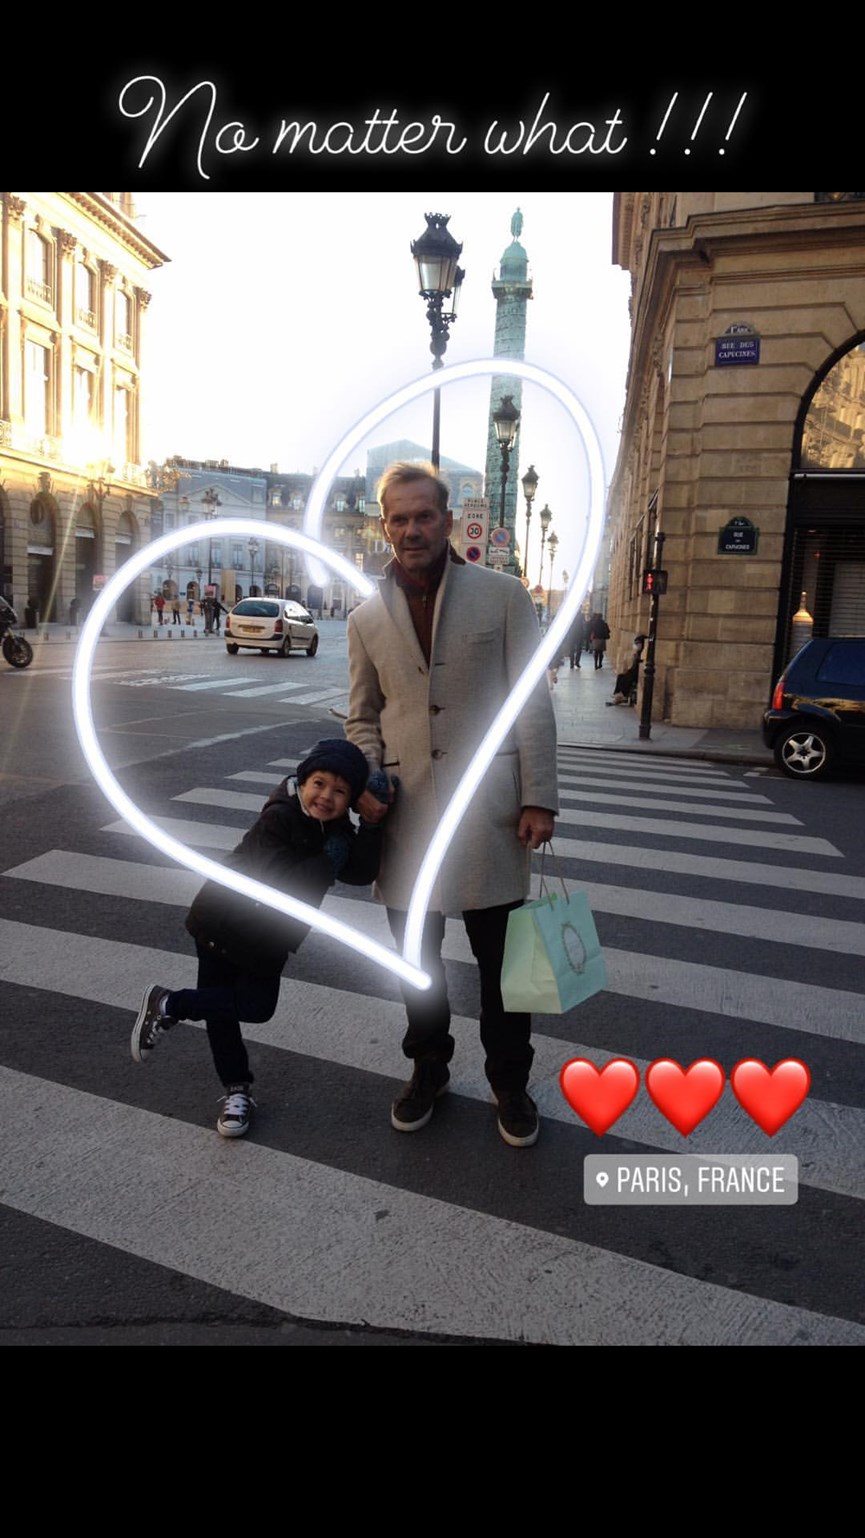 Ο Πέτρος Κωστόπουλος με την κόρη του